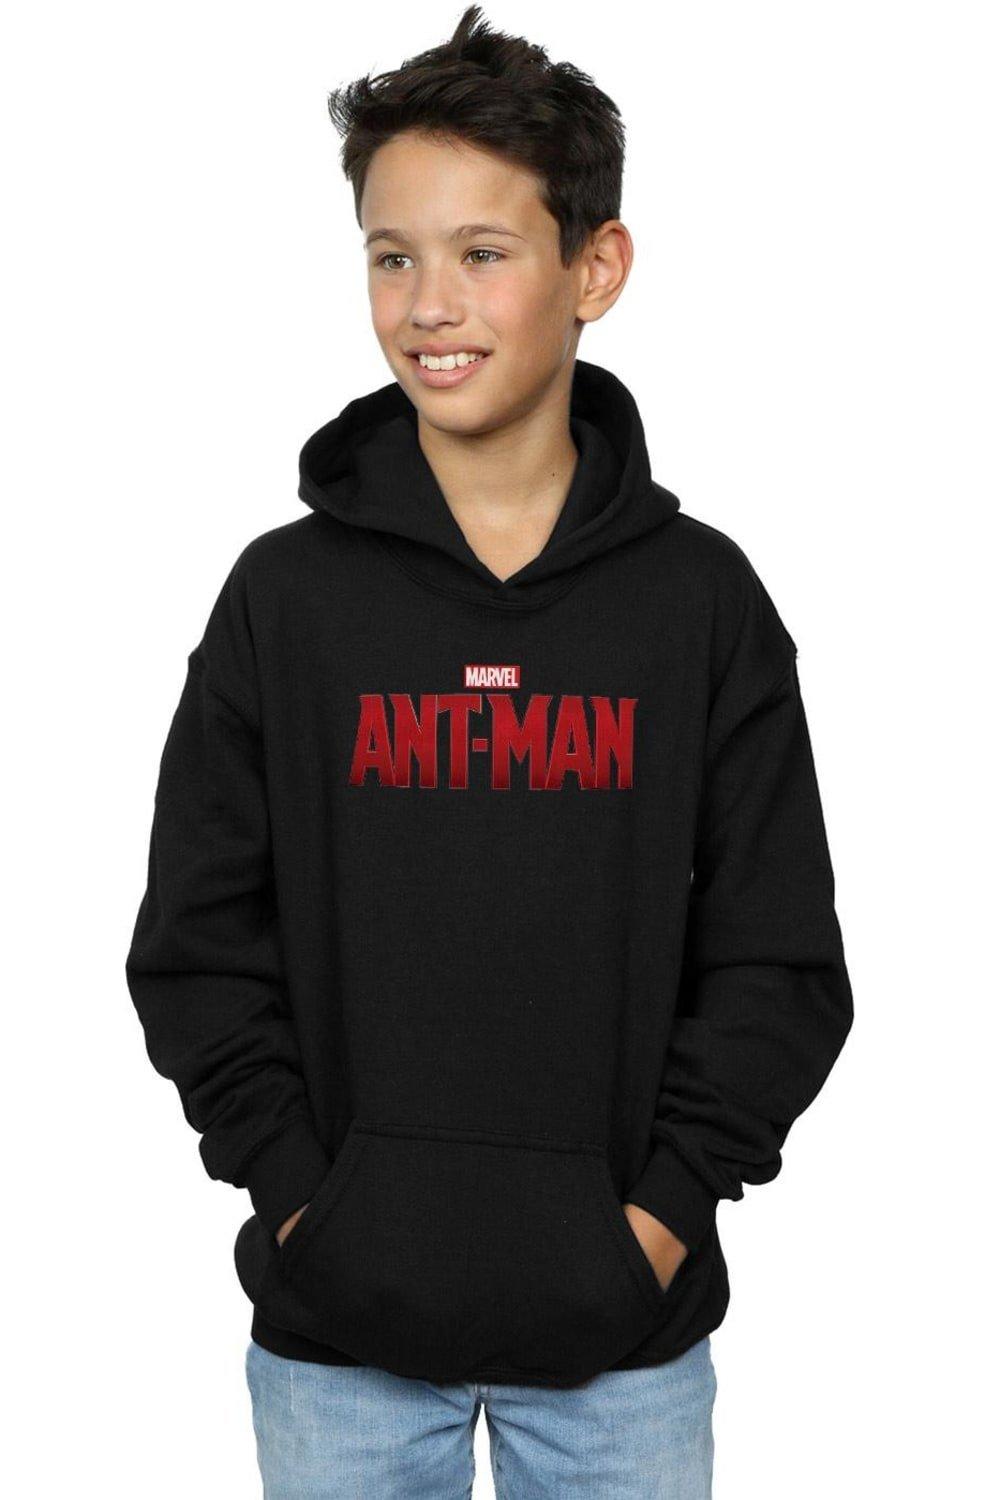 Ant-Man Movie Logo Hoodie